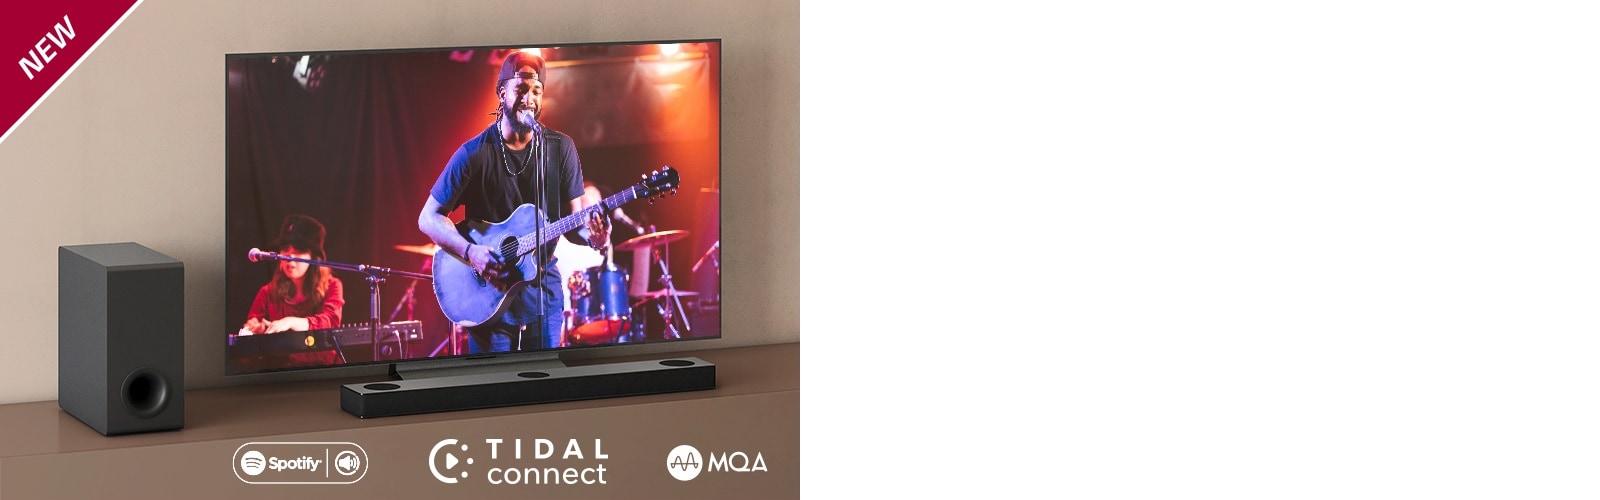 El TV de LG está en el estante marrón, la barra de sonido de LG S80QY está frente al TV. El subwoofer está ubicado en el lado izquierdo de la pared. El televisor muestra una escena de un concierto. Se muestra la marca NUEVA en la esquina superior izquierda